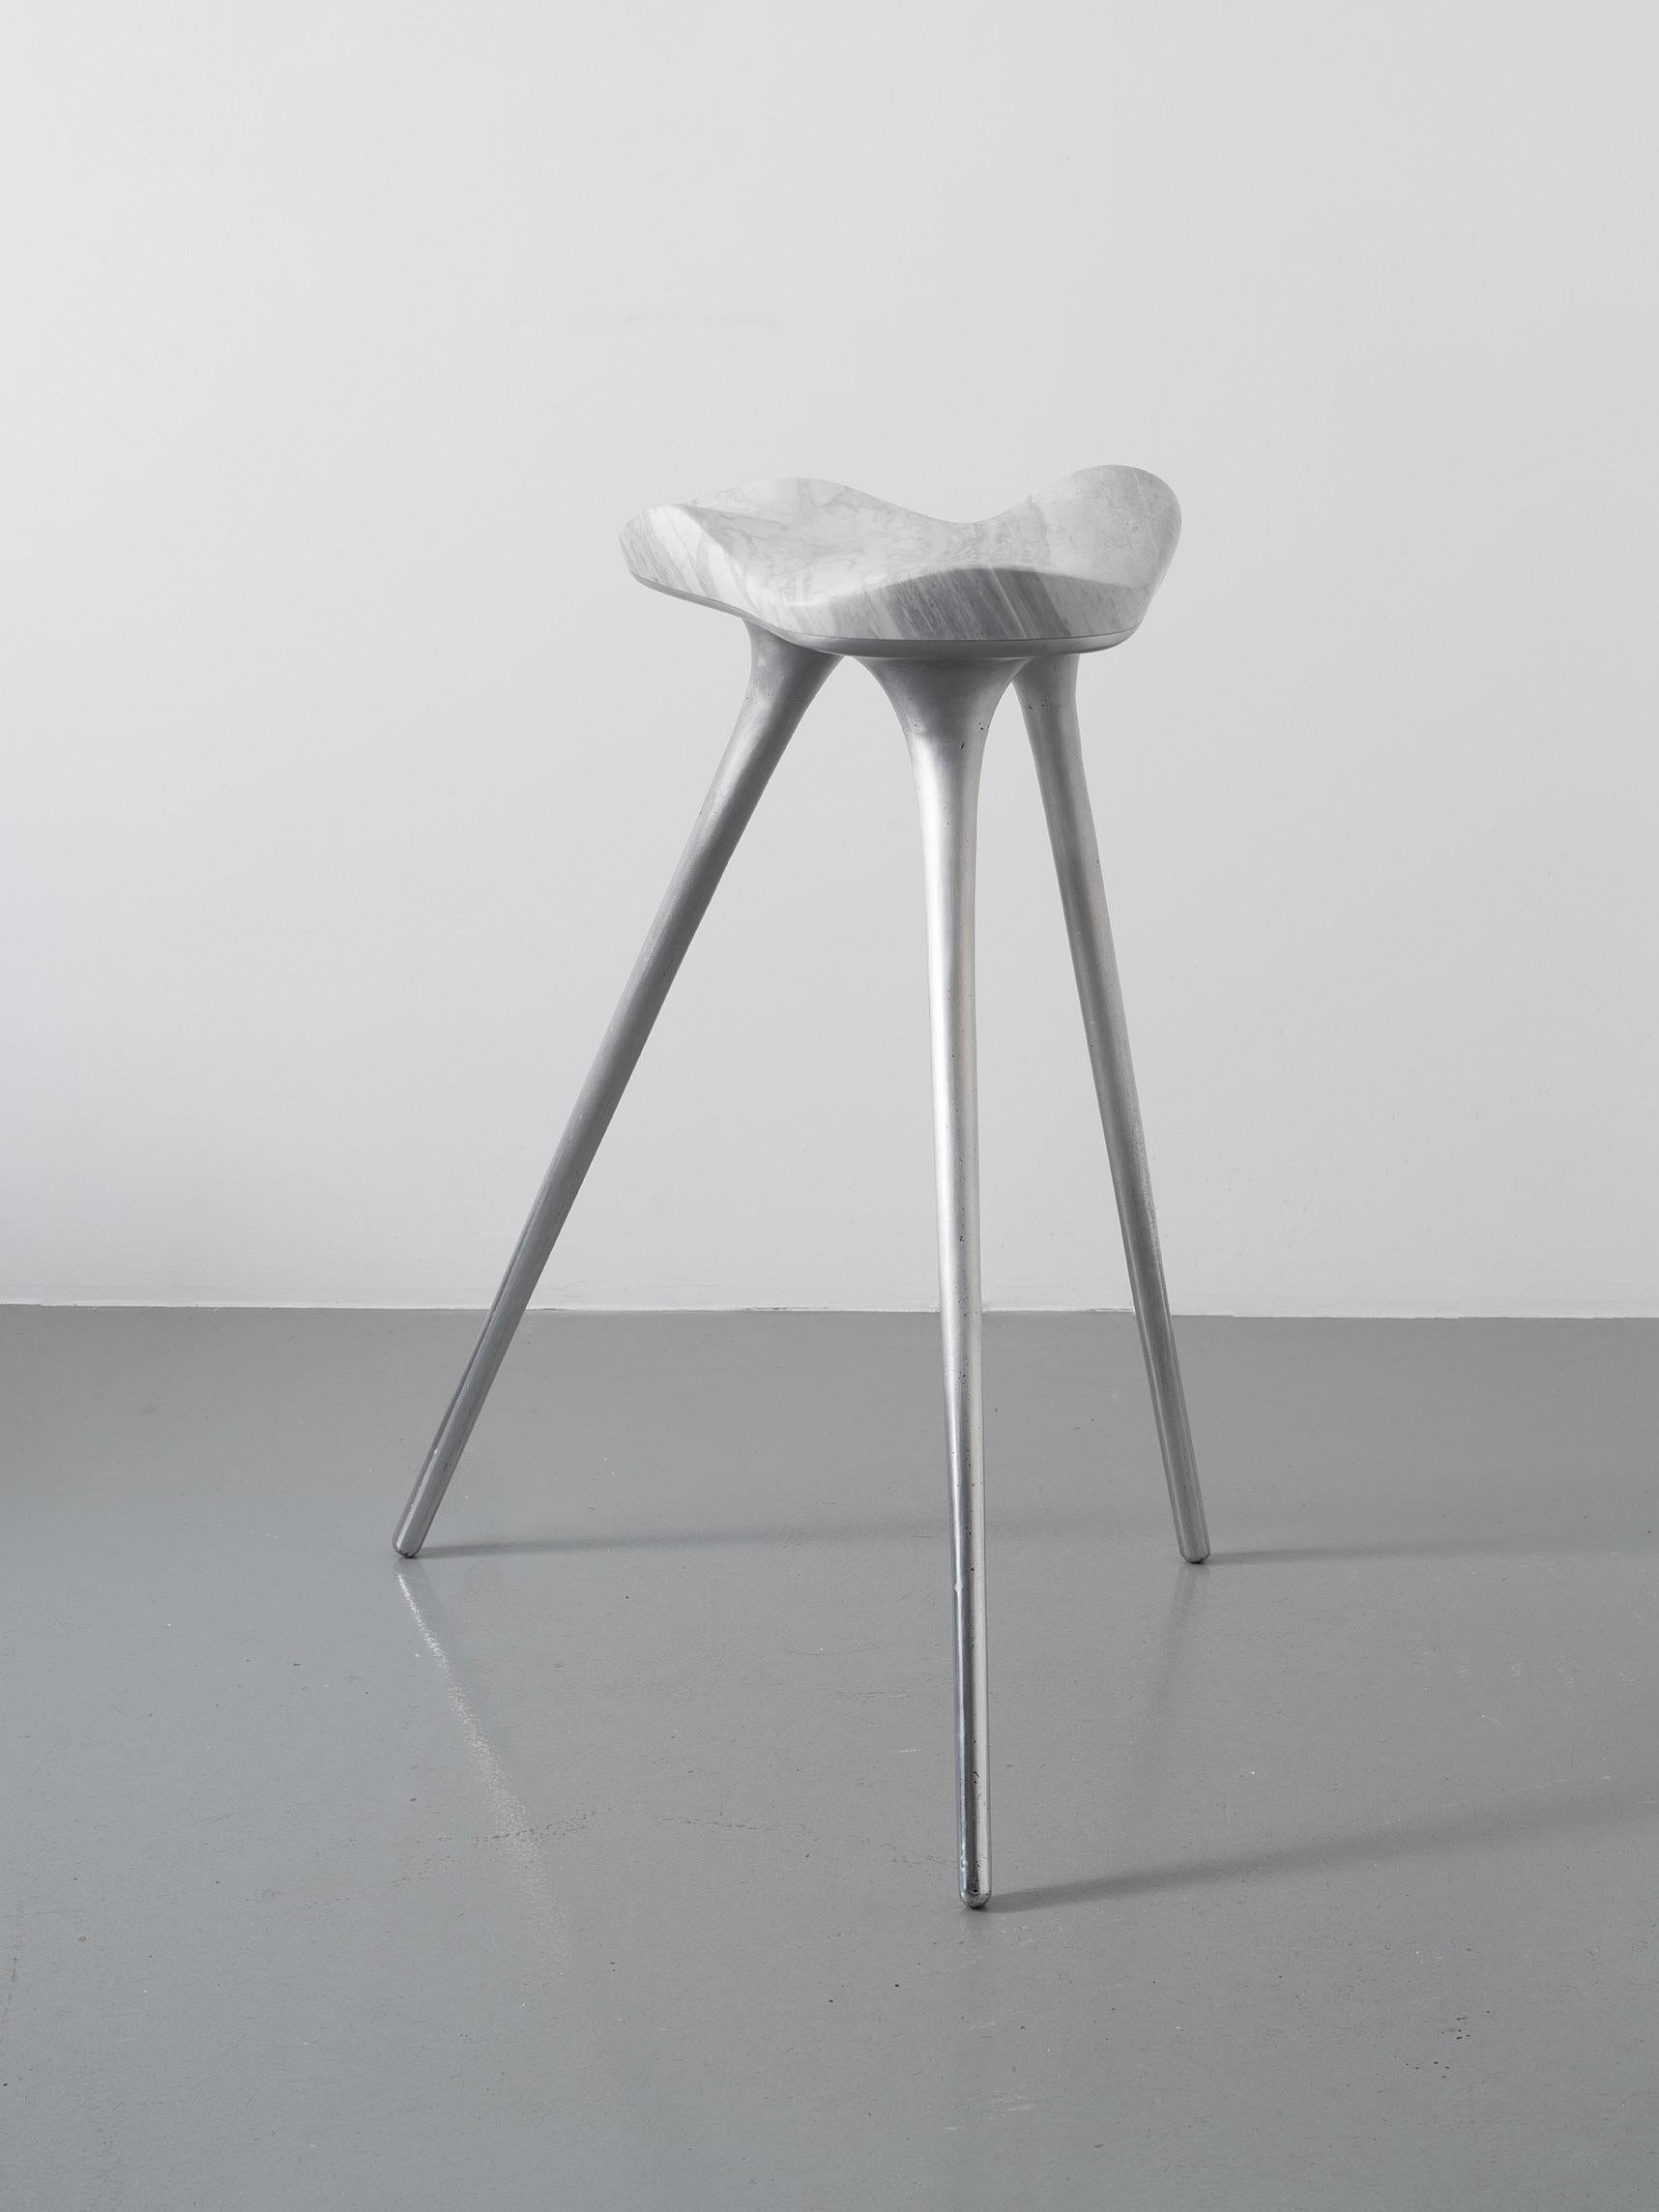 Stephen Shaheen
Nuvola Barhocker, 2020
Handgeformter Carrara-Marmor, Aluminiumguss
24 x 30 x 33 Zoll 
sitz mit einem Durchmesser von 15,5 cm.